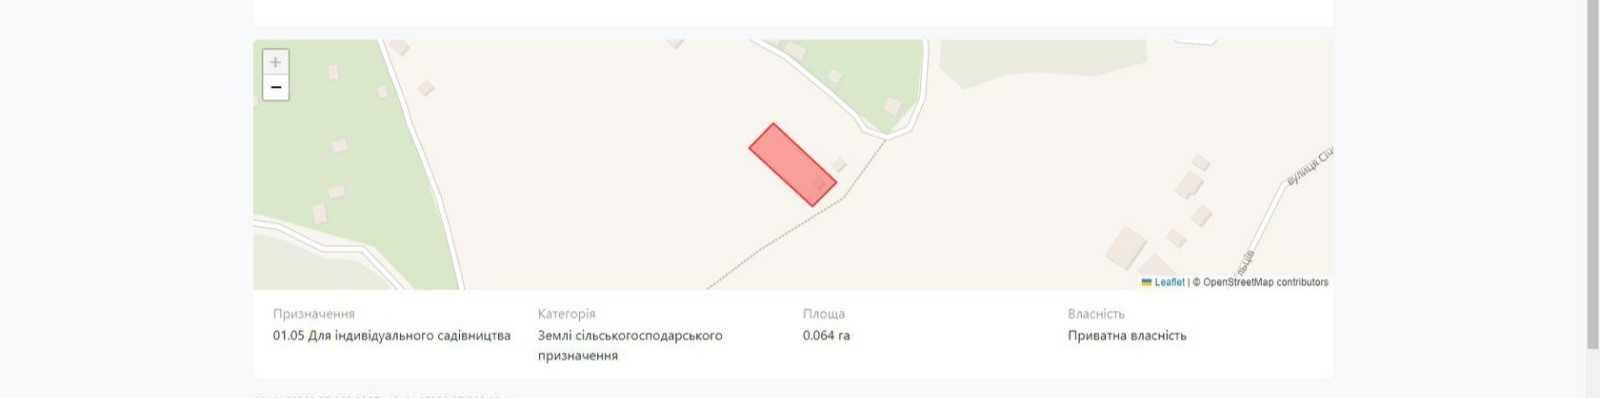 Продаж земельної ділянки в Брюховичах